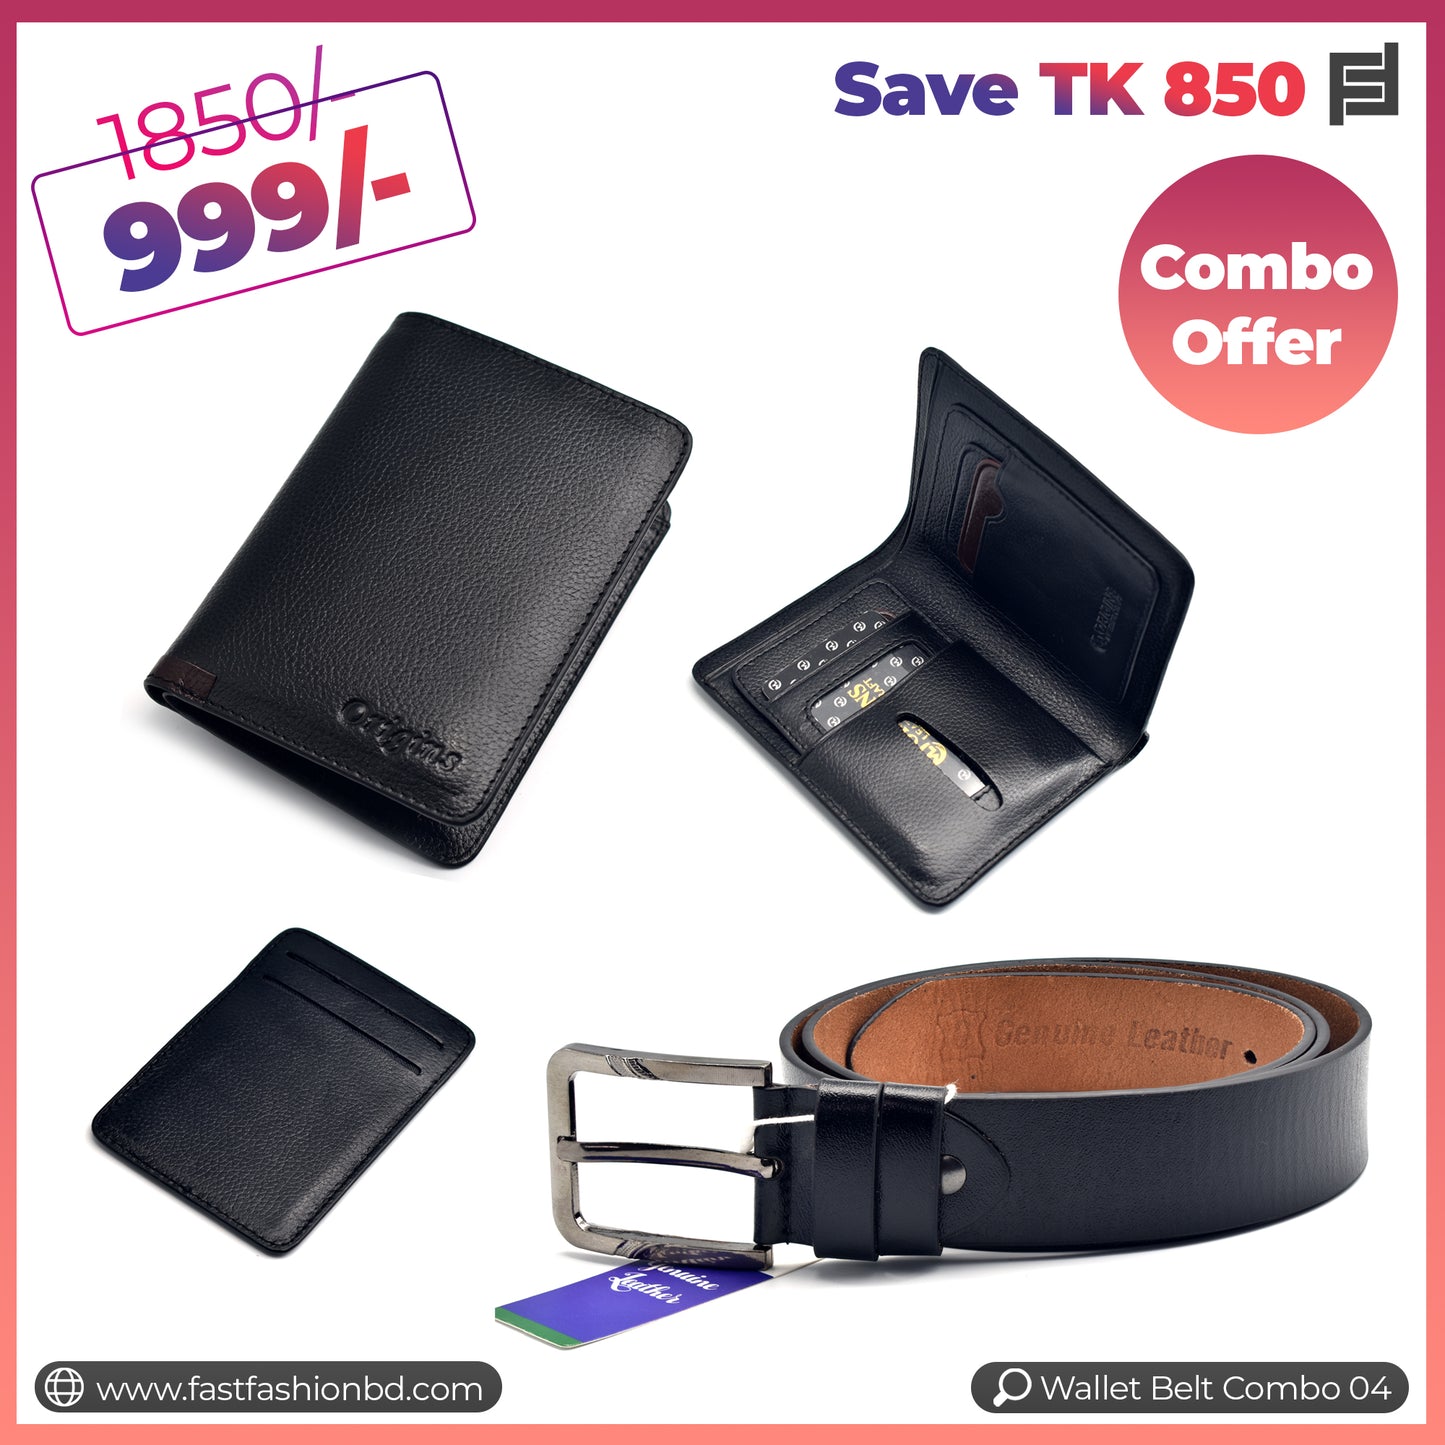 Wallet Belt Combo Offer Save TK 850 - Wallet Belt Combo 04